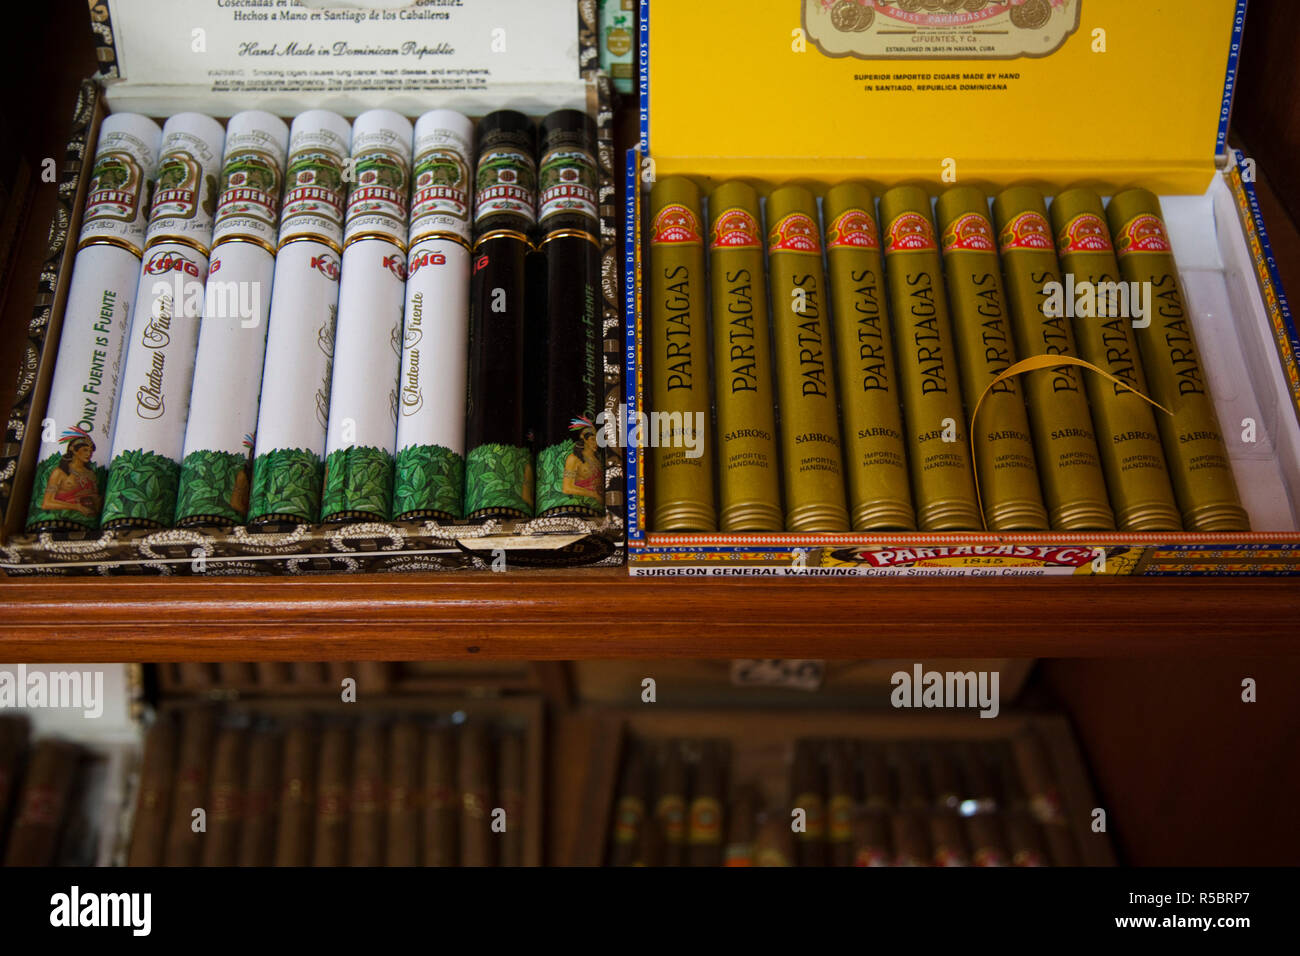 Repubblica Dominicana, Santo Domingo, Zona Colonial, sigari dominicani a La Leyenda del Cigarro fabbrica di sigari Foto Stock